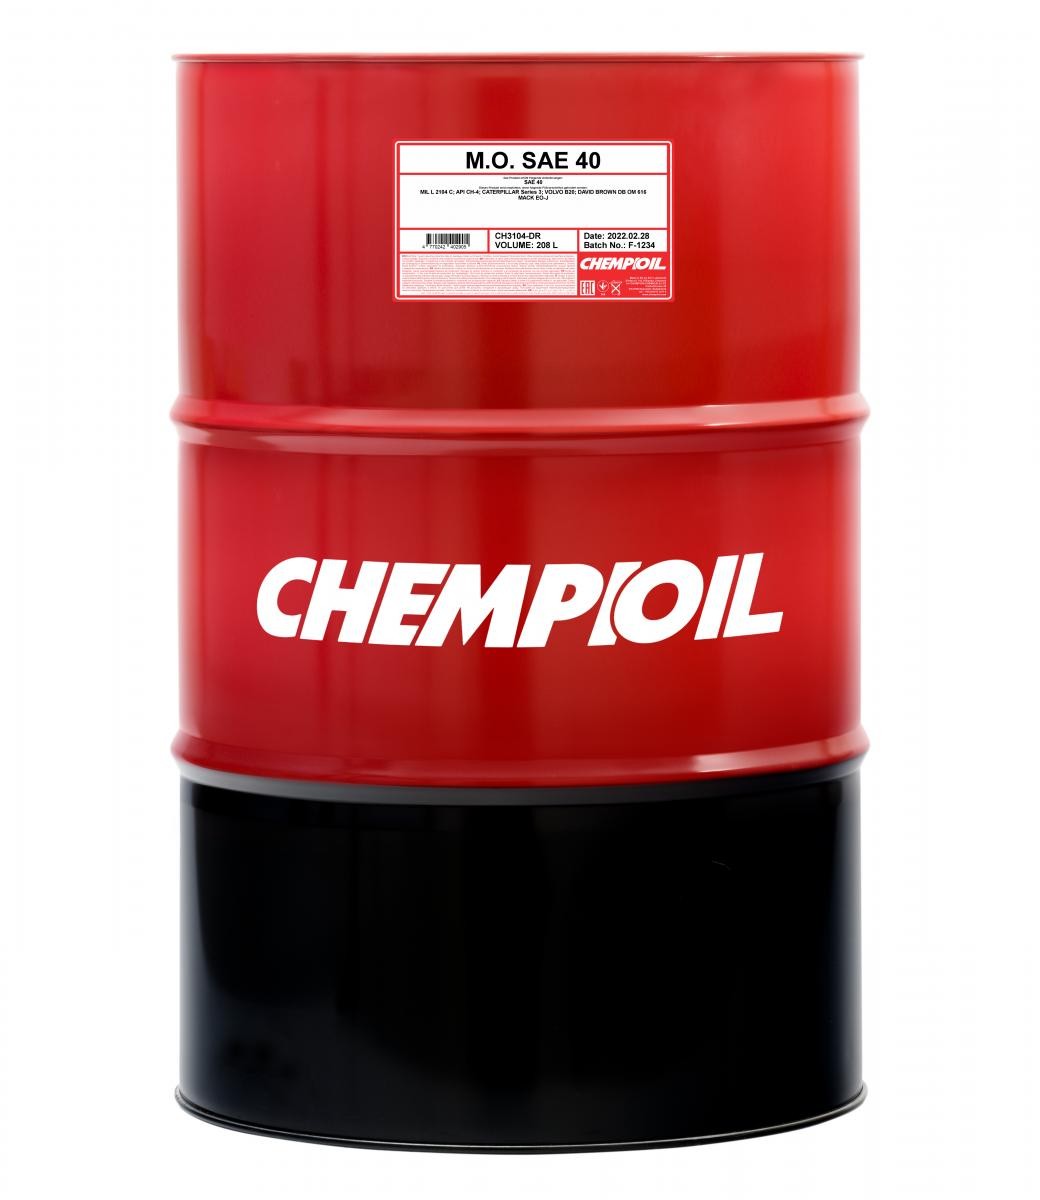 Car oil SAE 40 longlife diesel - CH3104-DR CHEMPIOIL M.O., SAE 40